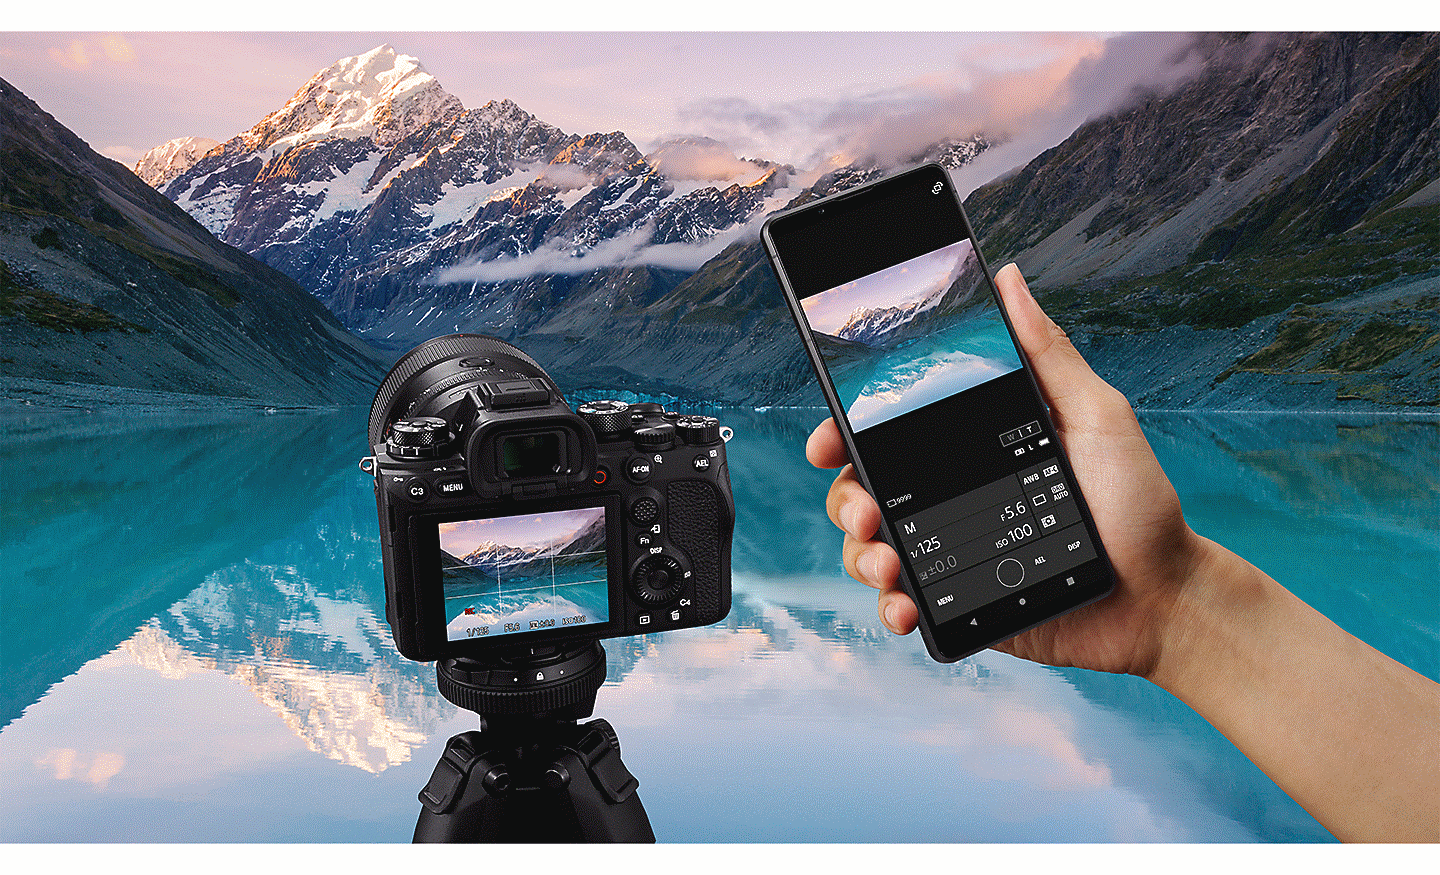 Cảnh hồ trên núi cao đẹp ngoạn mục, phía trước là máy ảnh Sony Alpha và điện thoại Xperia PRO-I.